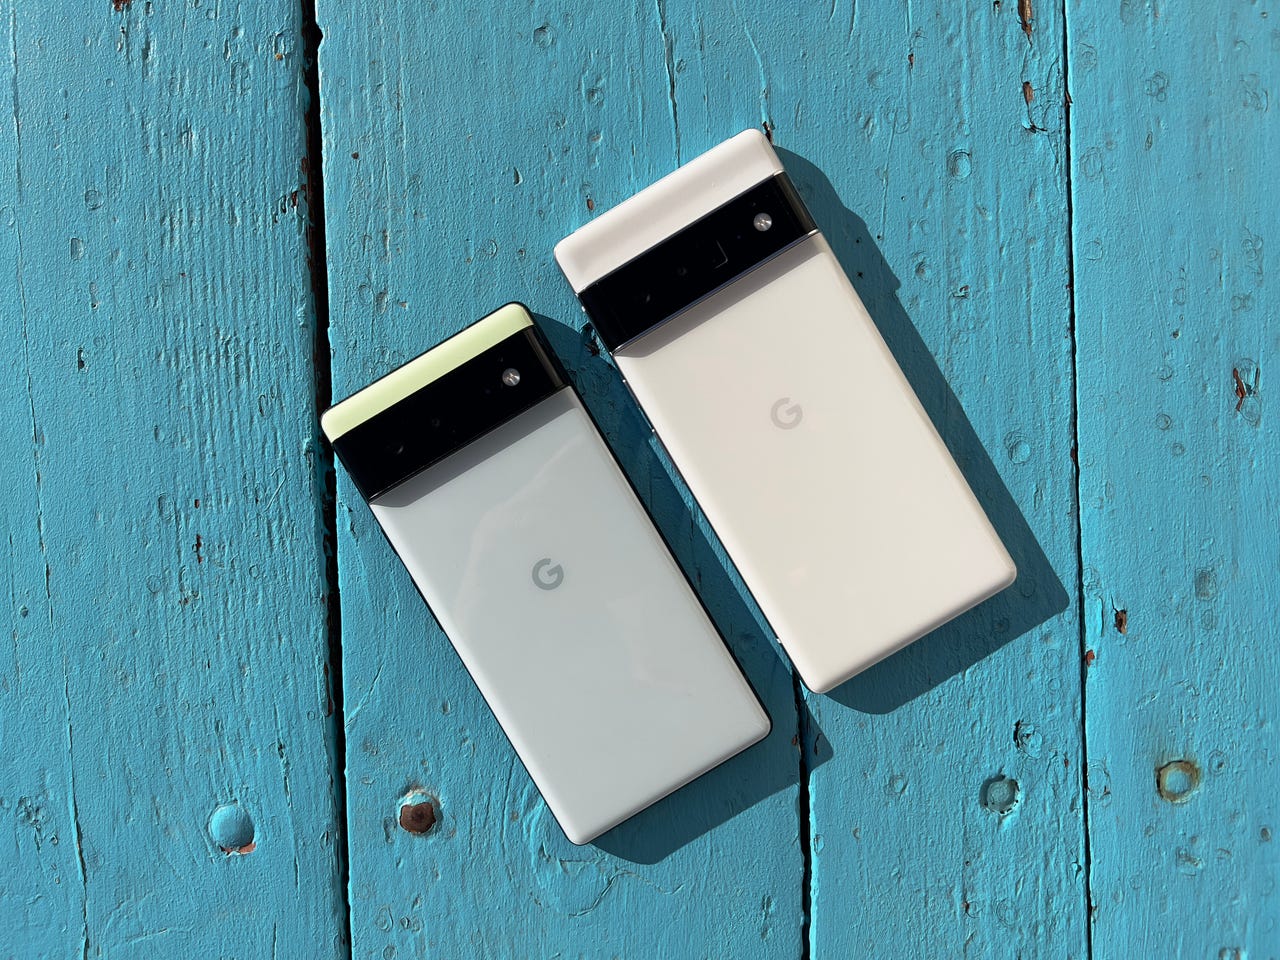 Google Pixel 6, Pixel 6 Pro: Specs, Price, Release Date, Details